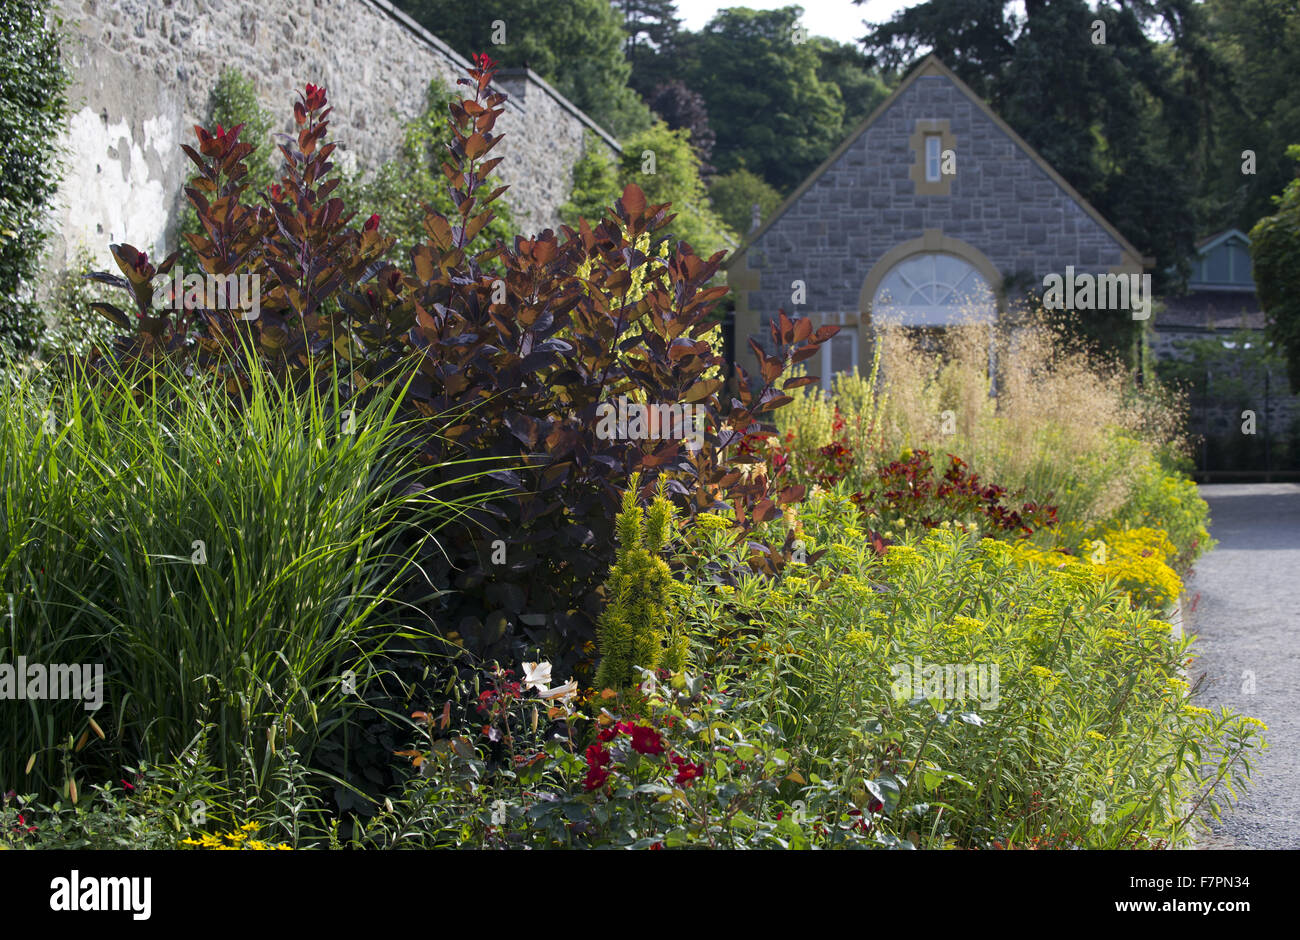 Las plantas que crecen en julio en Bodnant Garden, Clwyd, Gales. Creada por cinco generaciones de una familia, de Bodnant se asienta perfectamente en su espectacular paisaje del norte de Gales. Foto de stock